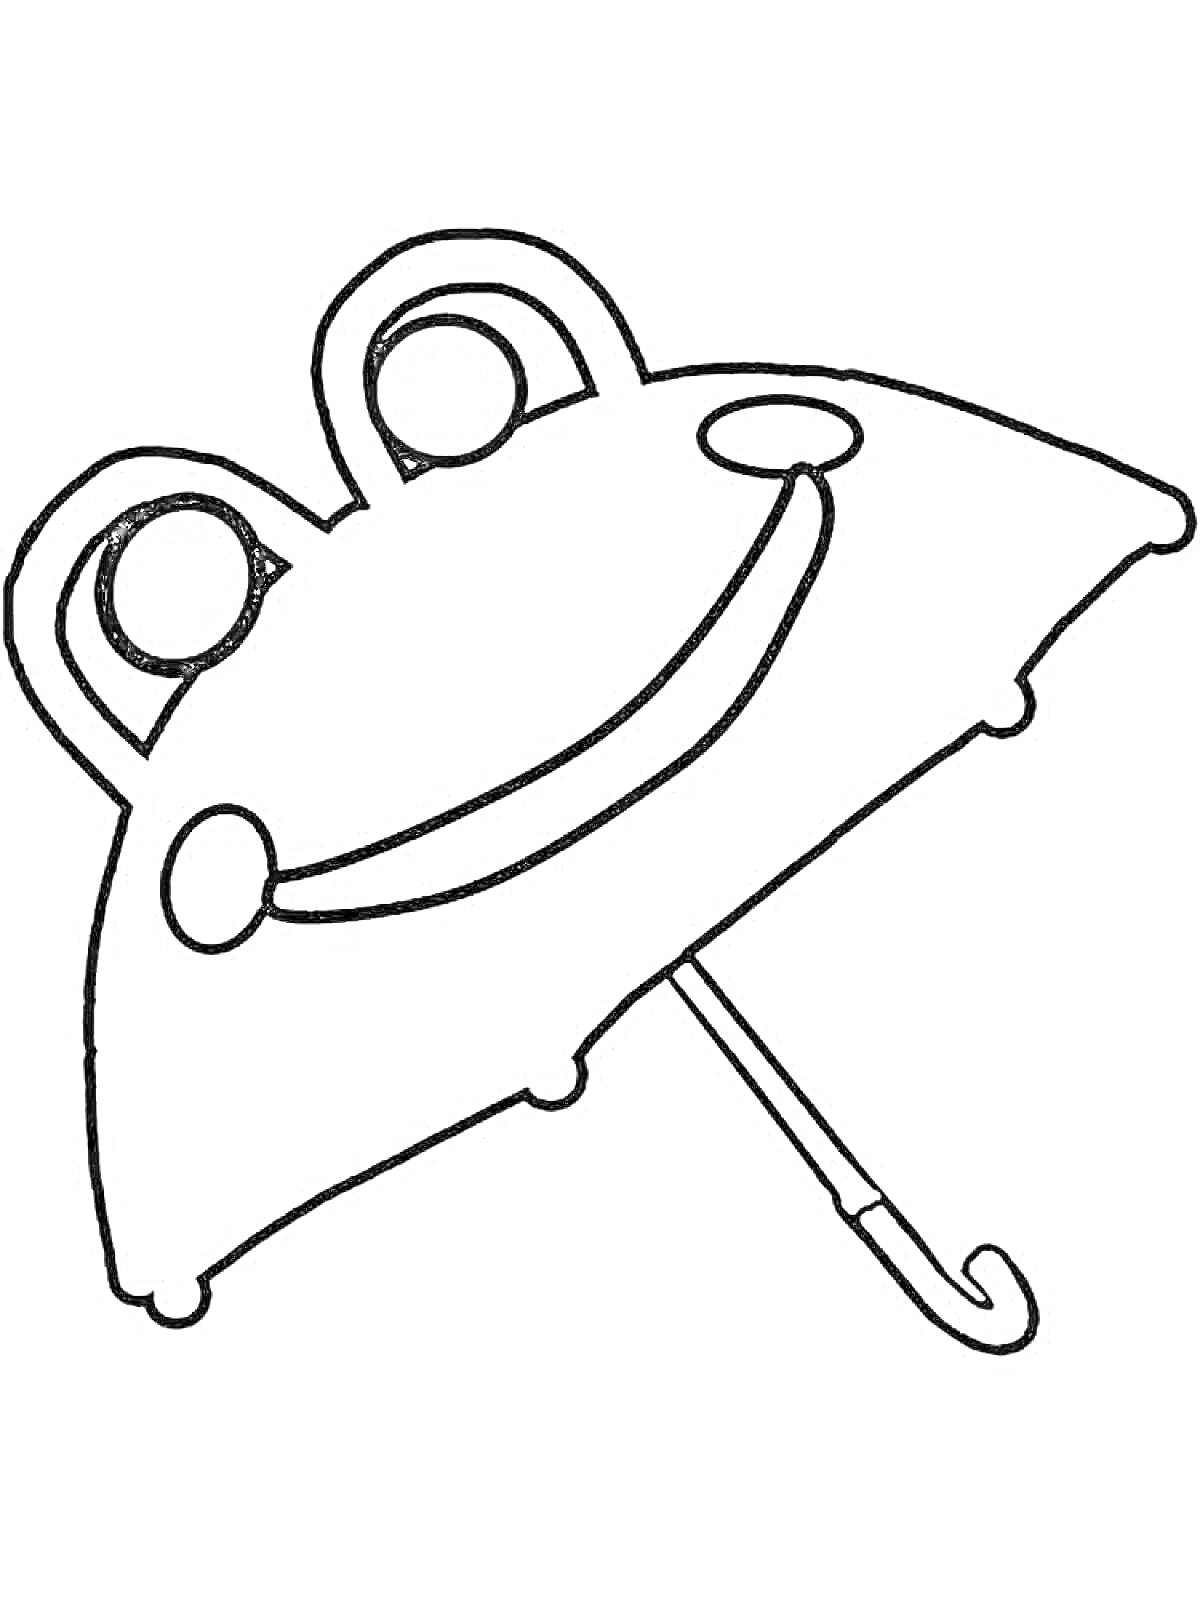 Раскраска Раскраска с изображением зонтика в форме мордочки животного с глазами, щёчками и улыбающимся ртом